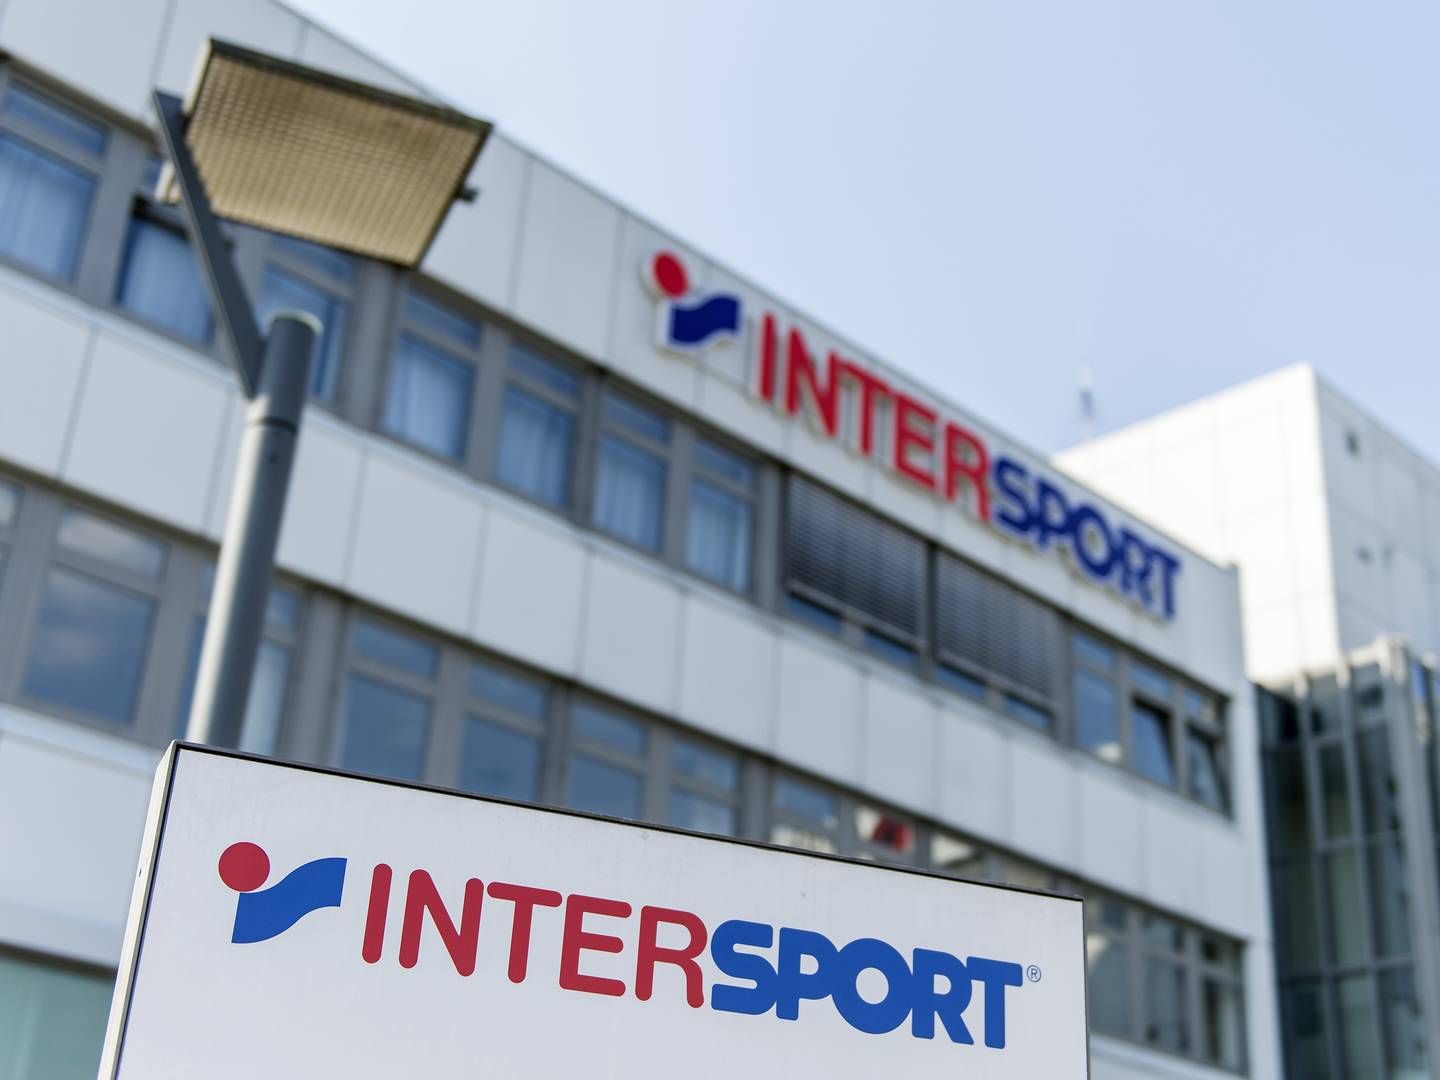 Intersport har over 5.000 butikker i mere end 30 lande. I Danmark drives sportskæden gennem selskabet Obi Sport, der også står bag The Athlete’s Foot. | Foto: Daniel Maurer/ap/ritzau Scanpix